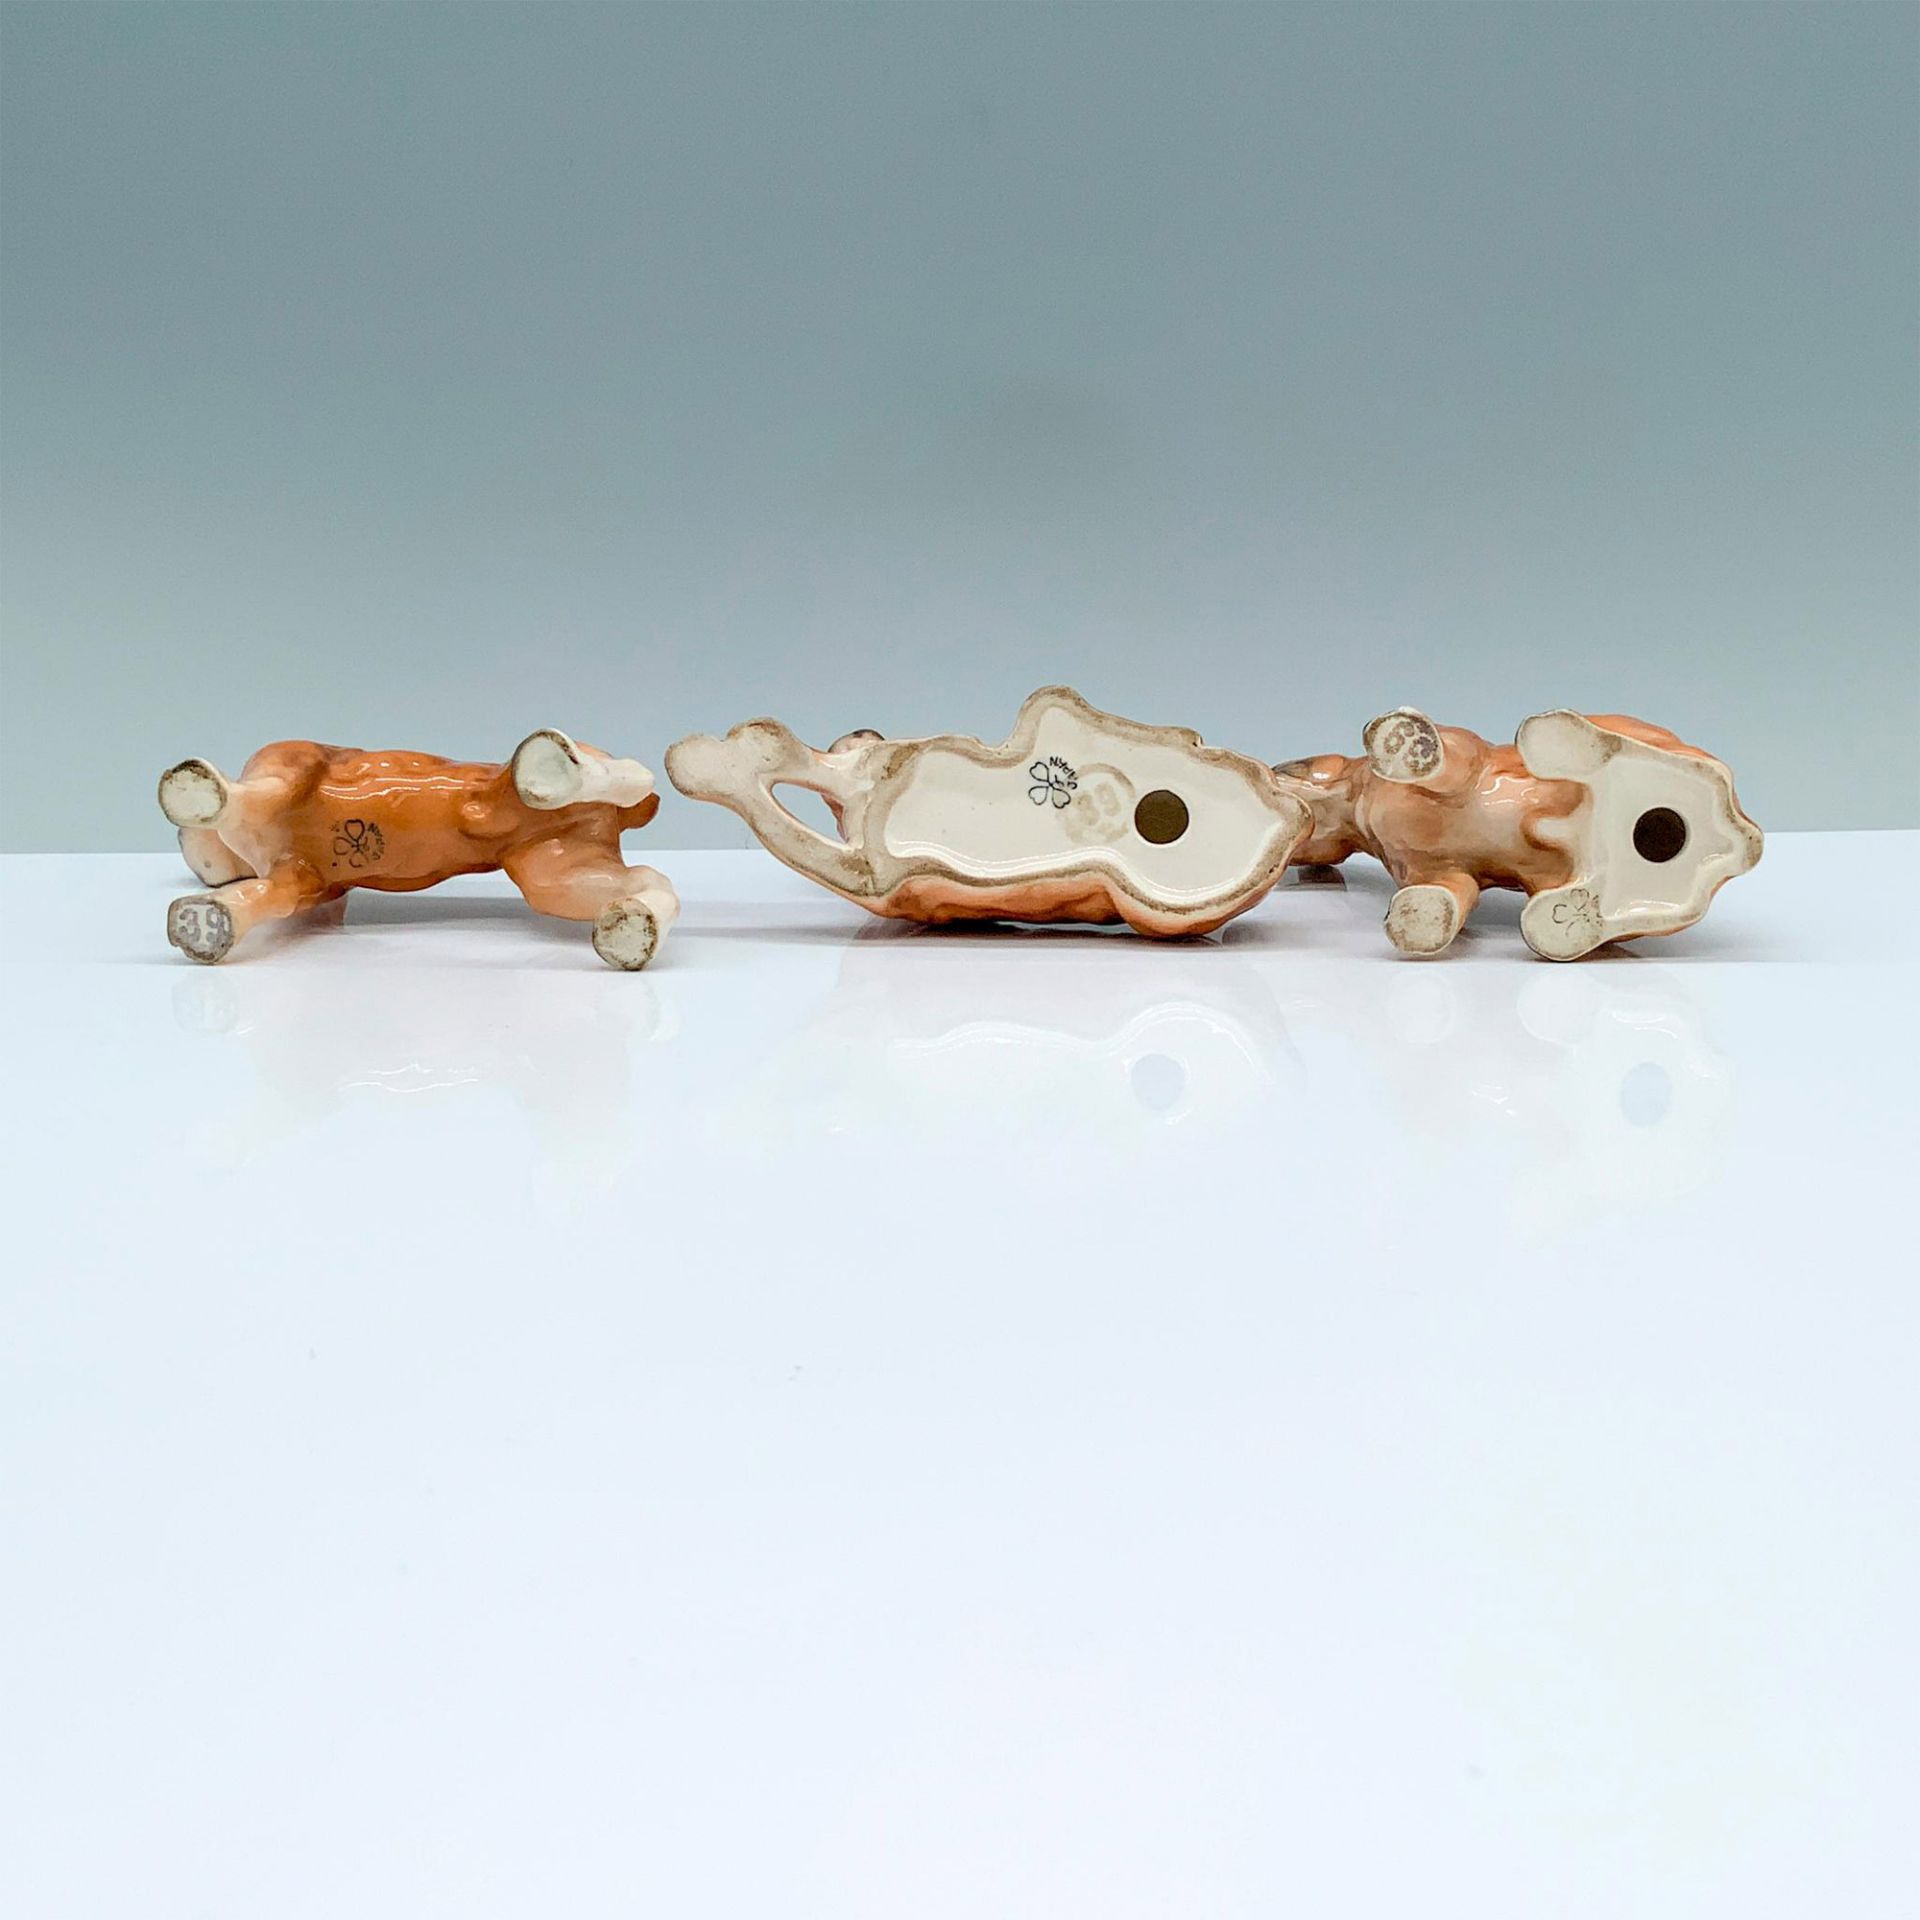 3pc Bullmastiff Ceramic Figurines - Image 3 of 3